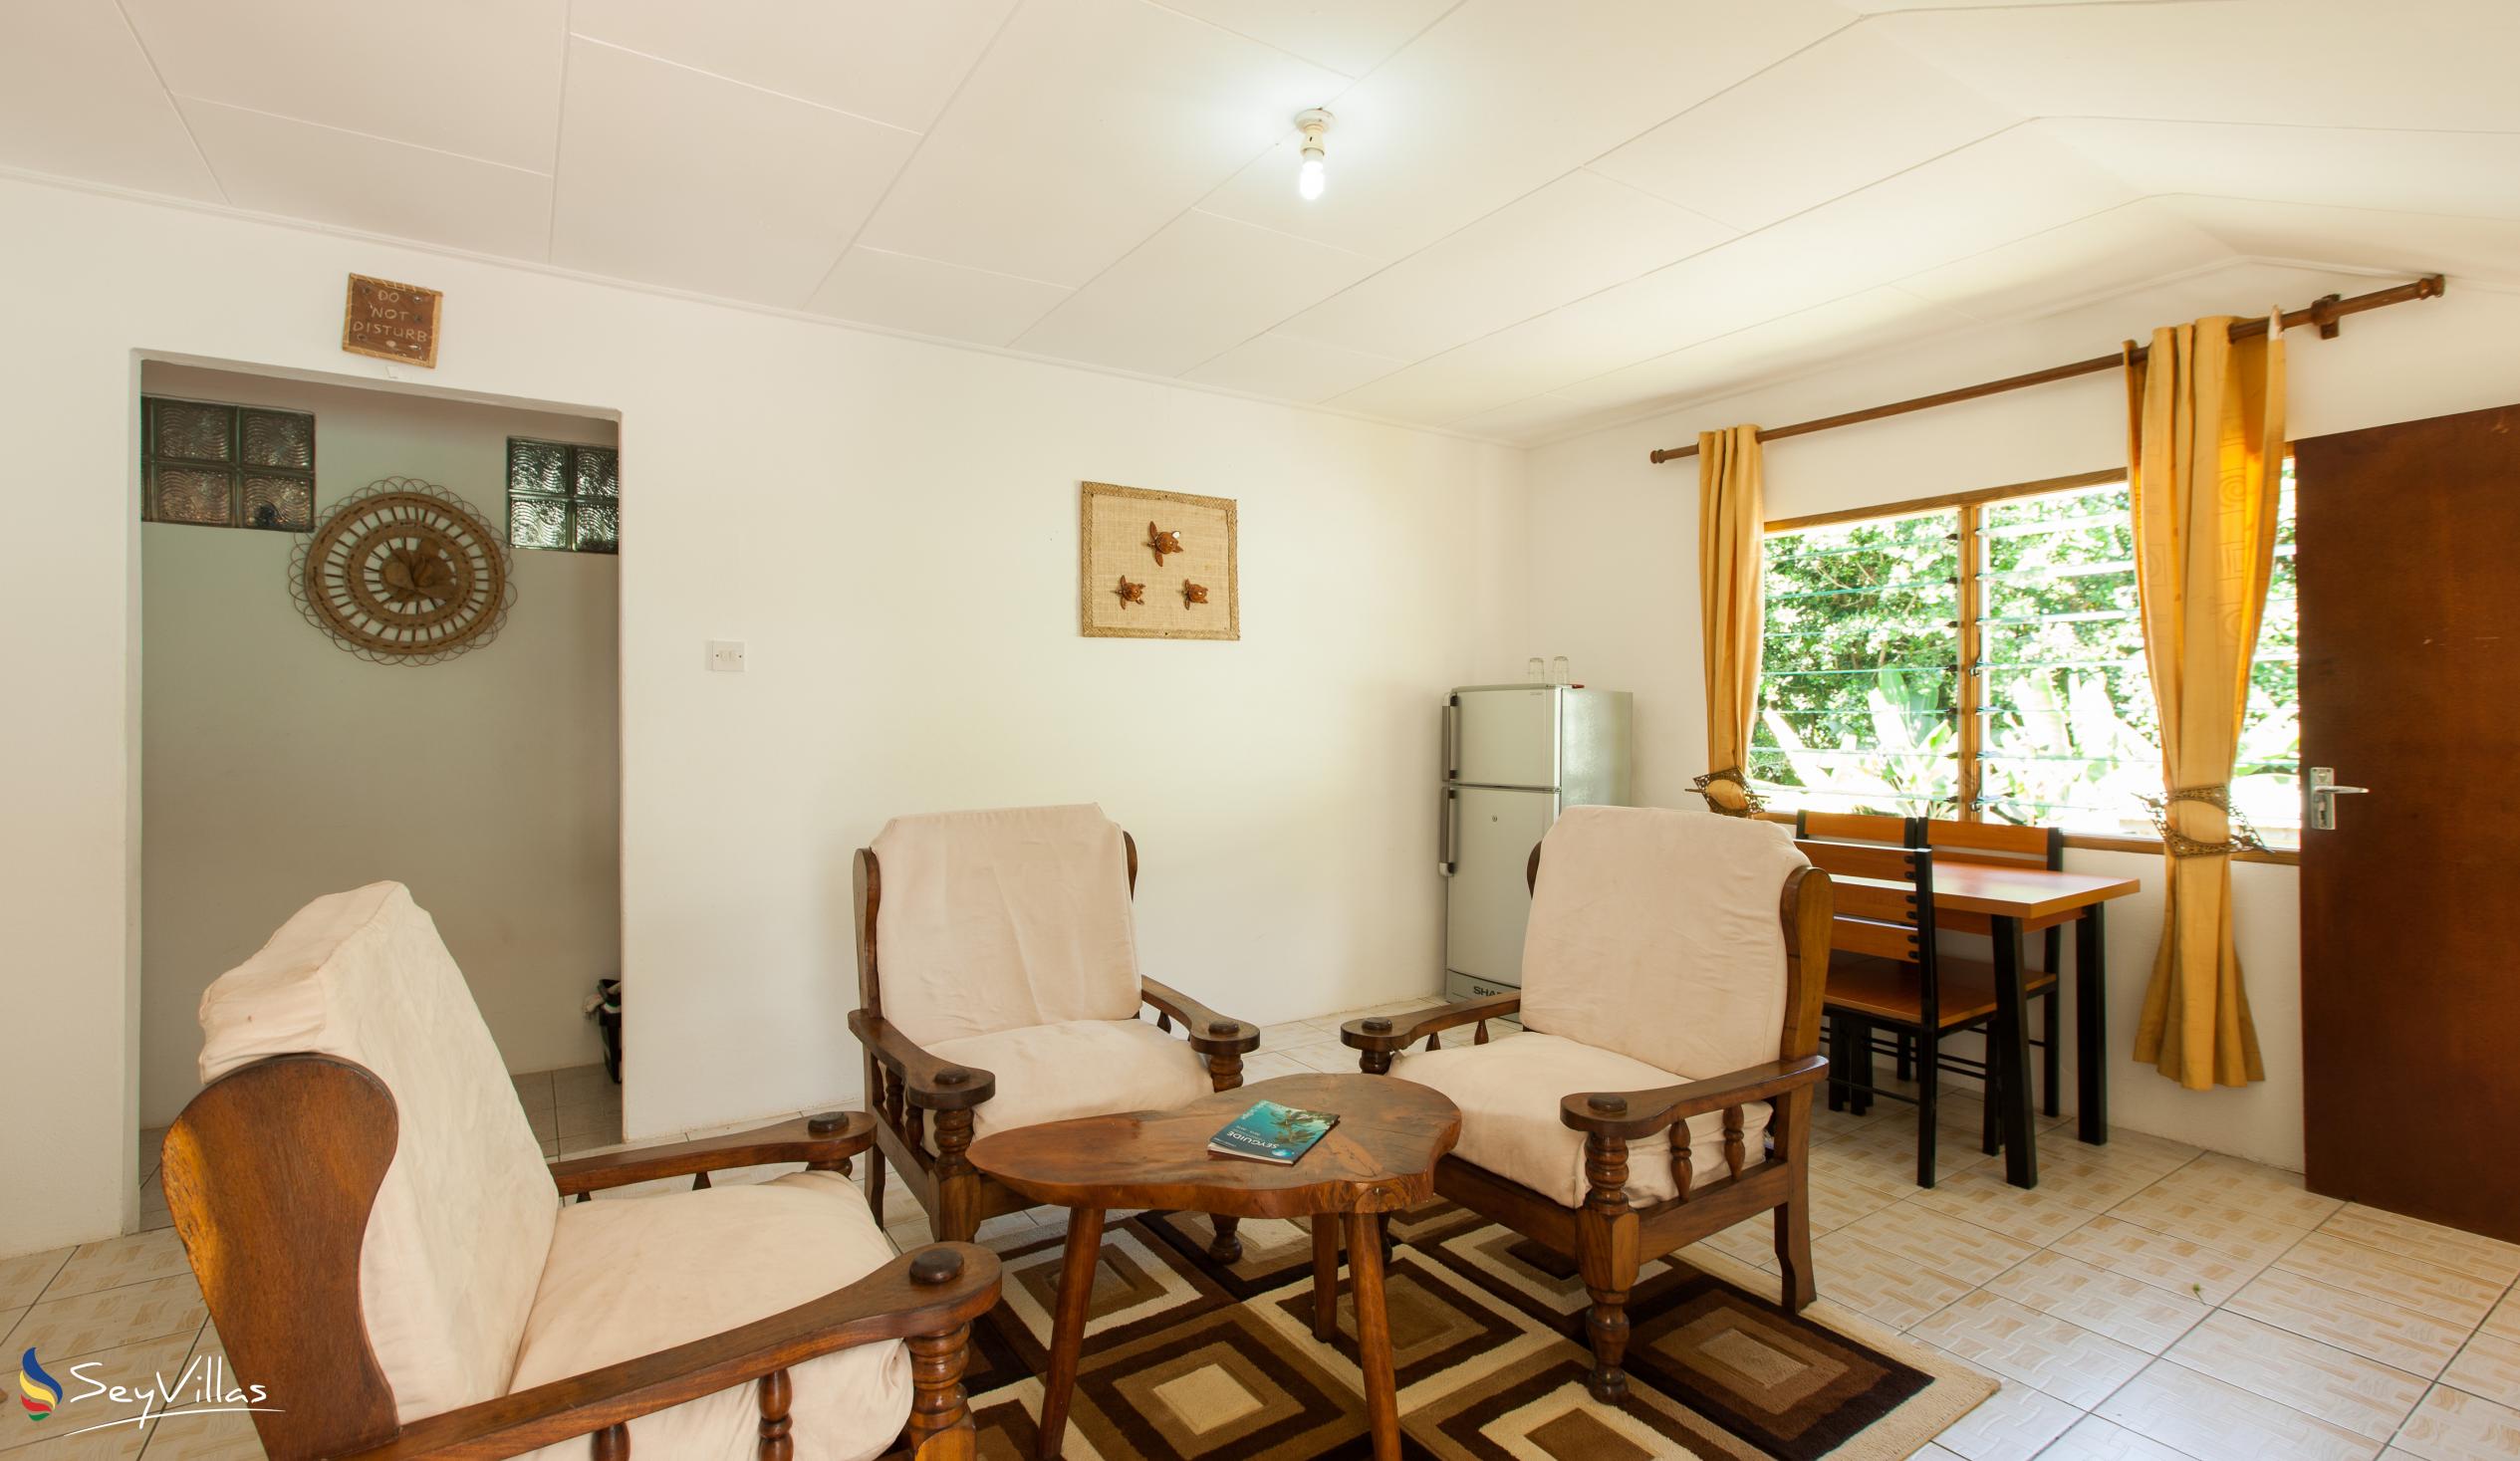 Foto 43: Tannette's Villa - Intérieur - La Digue (Seychelles)